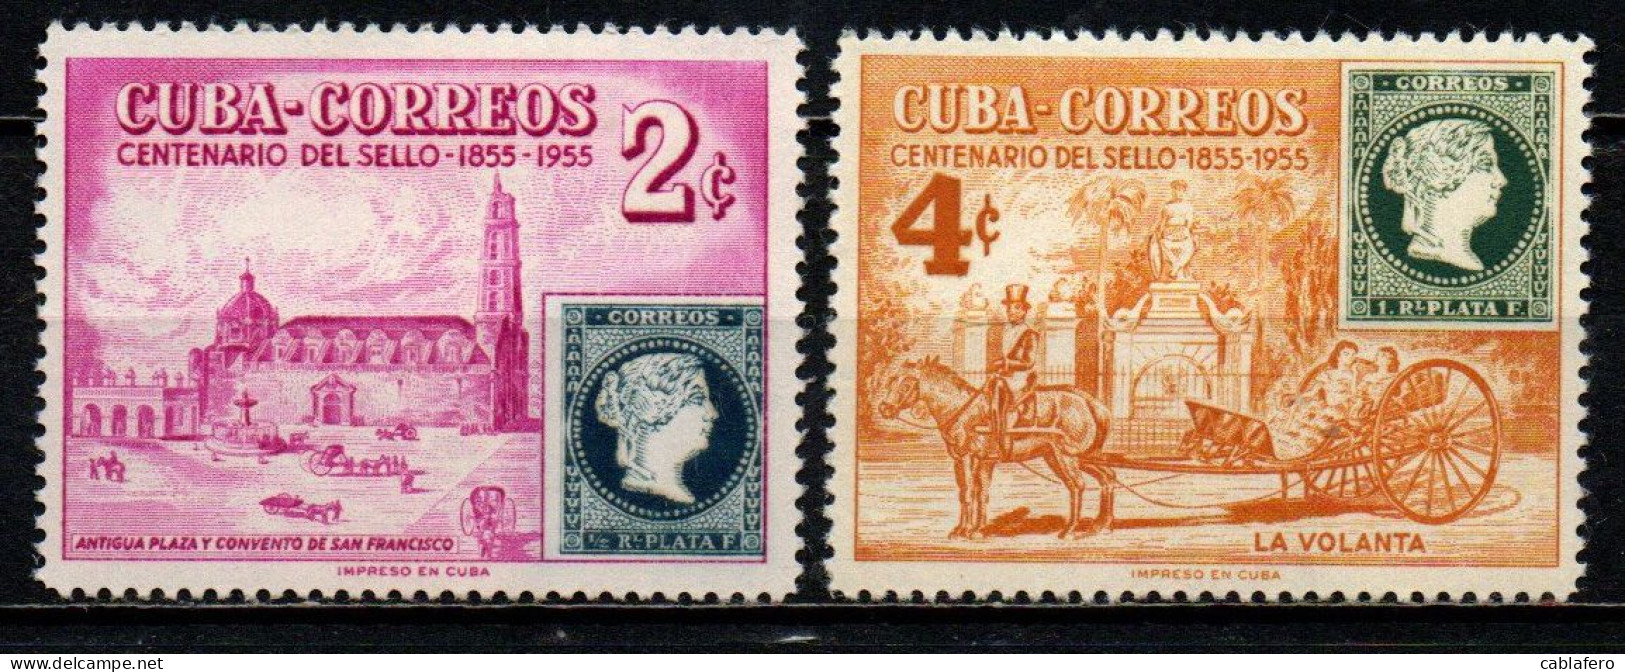 CUBA - 1955 -  Cent. Of Cuba’s 1st Postage Stamps - MH - Ongebruikt